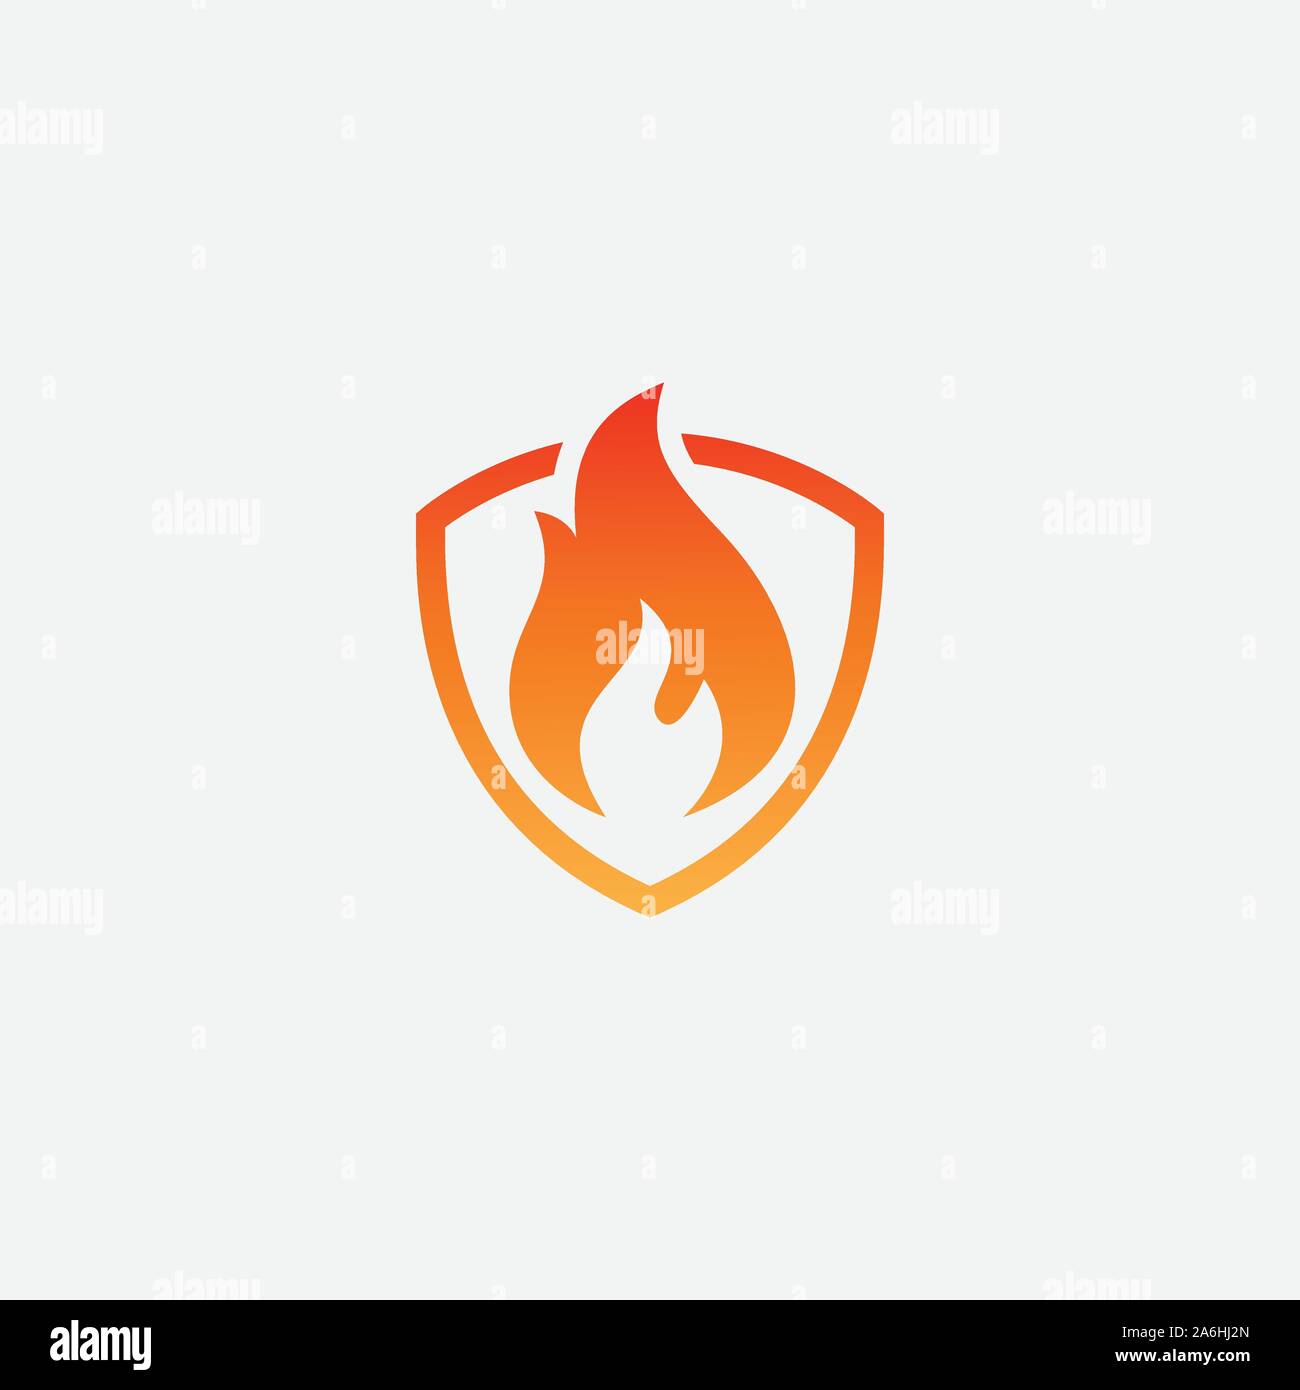 Fire Shield Logo Design Vector Template, Shield Fire Logo Concept, Fire Shield Icon Symbol, Fire protection icon, Security vector icon, Protection icon Stock Vector